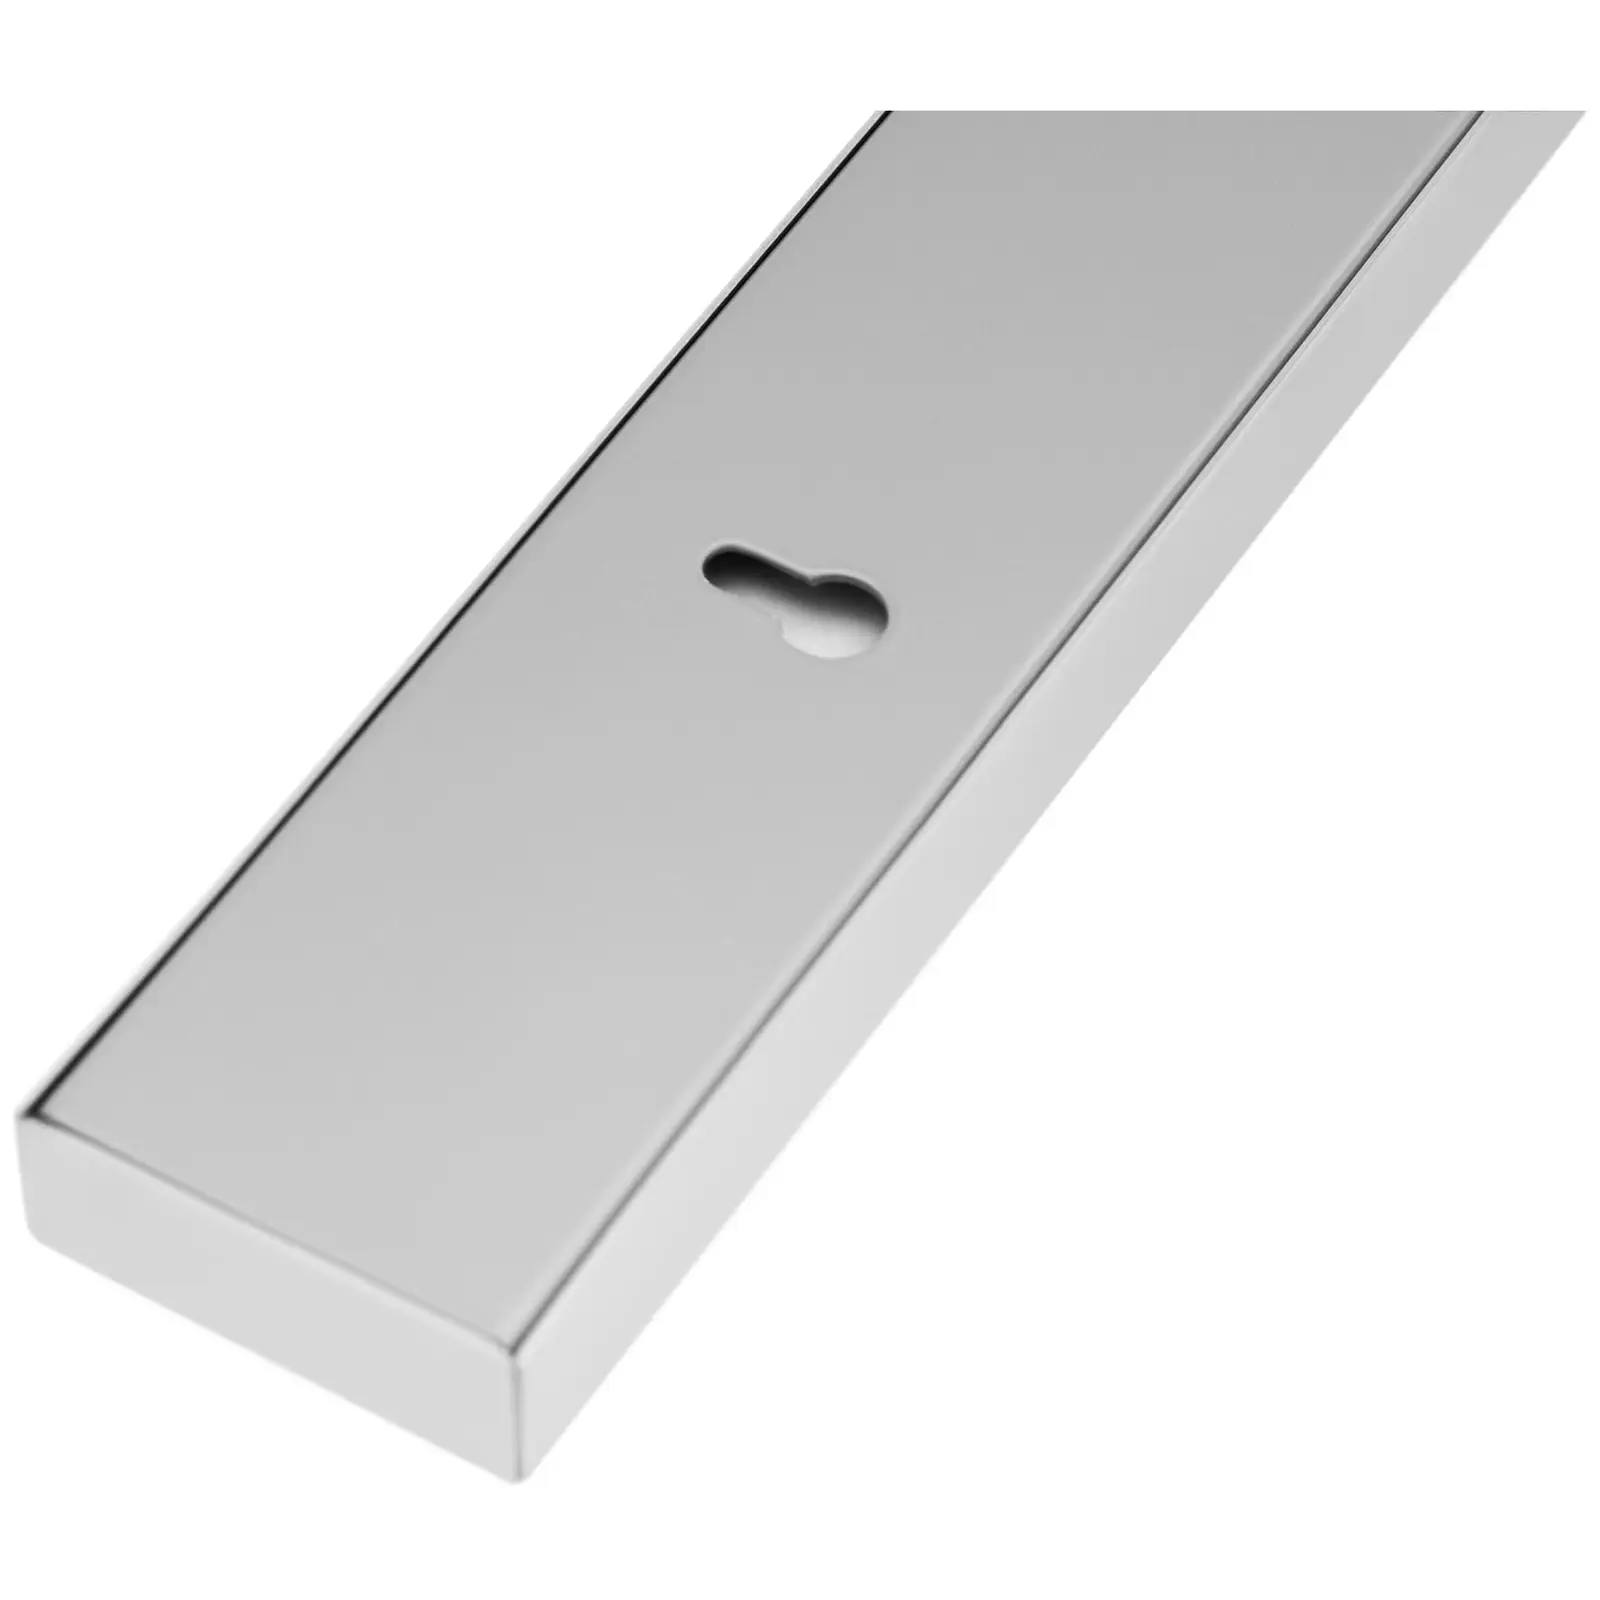 Mágnesszalag késekhez - rozsdamentes acél/ferritmágnes - 44.5 x 4.5 x 2 cm